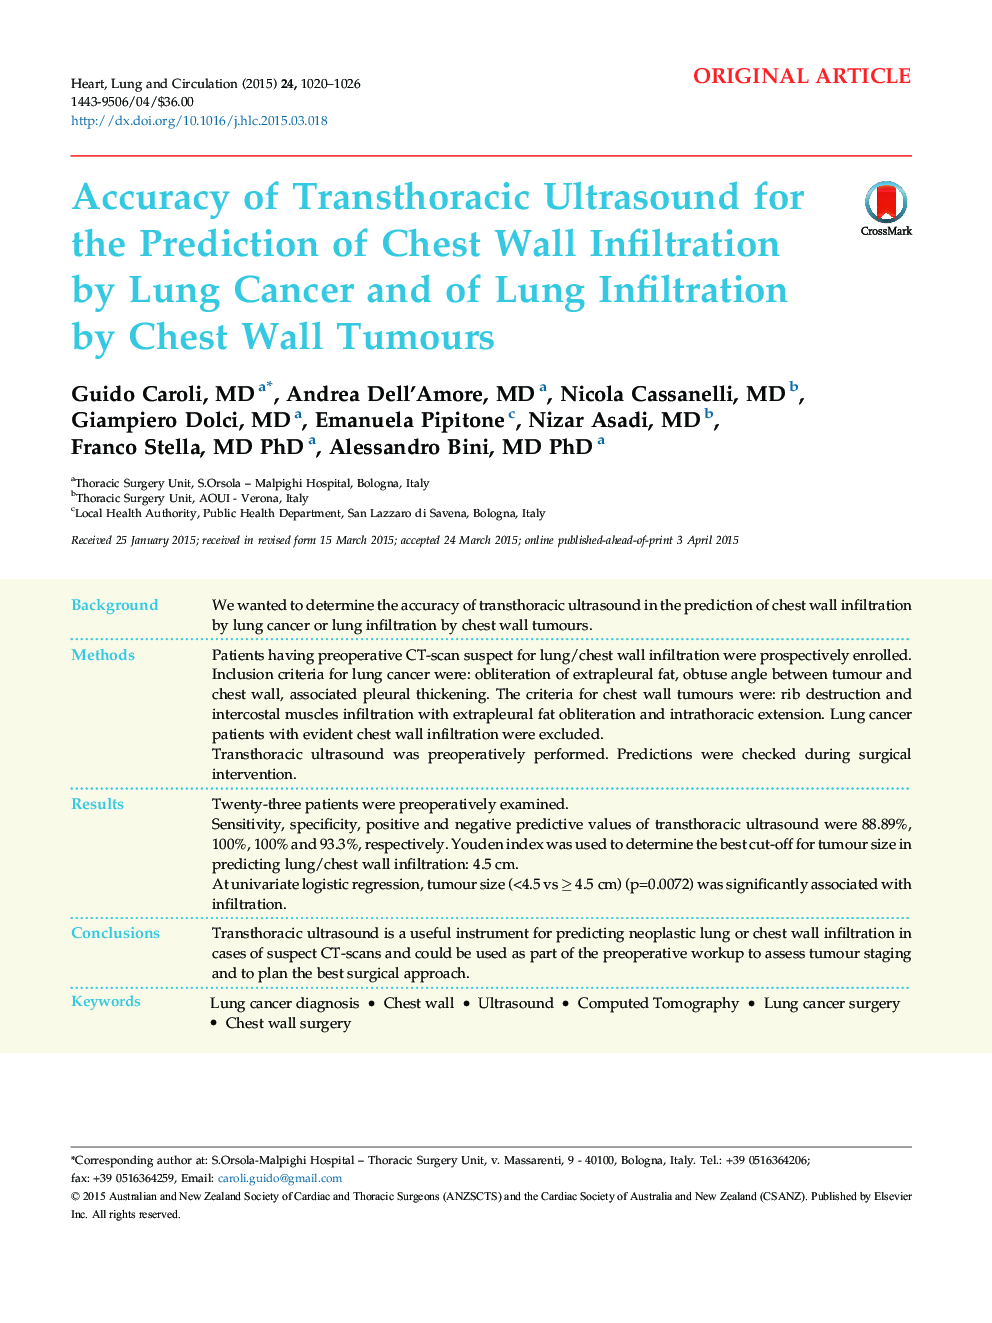 دقت سونوگرافی ترانستوراتیک برای پیش بینی نفوذ دیواره قفسه سینه توسط سرطان ریه و نفوذ ریه توسط تومورهای دیواره قفسه سینه 